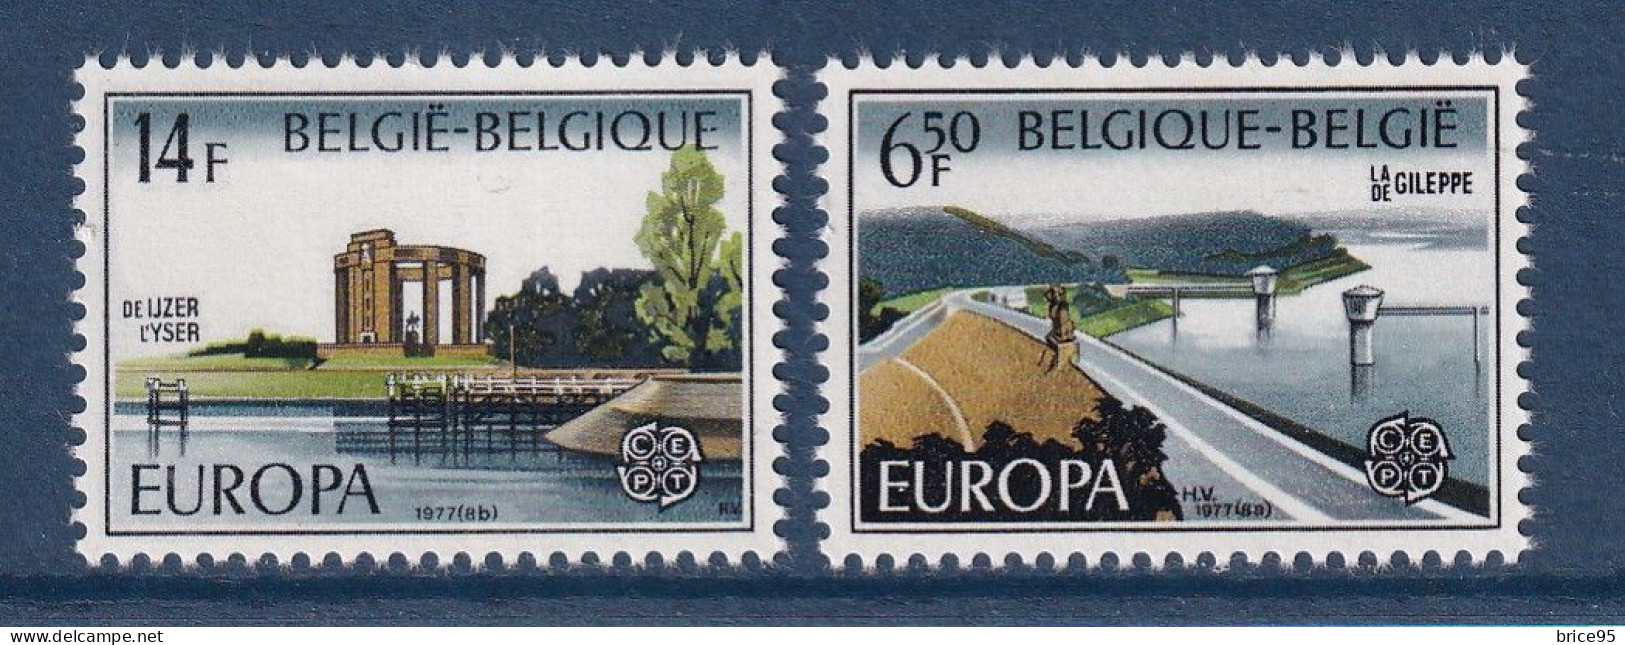 Belgique - Europa - YT N° 1848 Et 1849 ** - Neuf Sans Charnière - 1977 - 1977